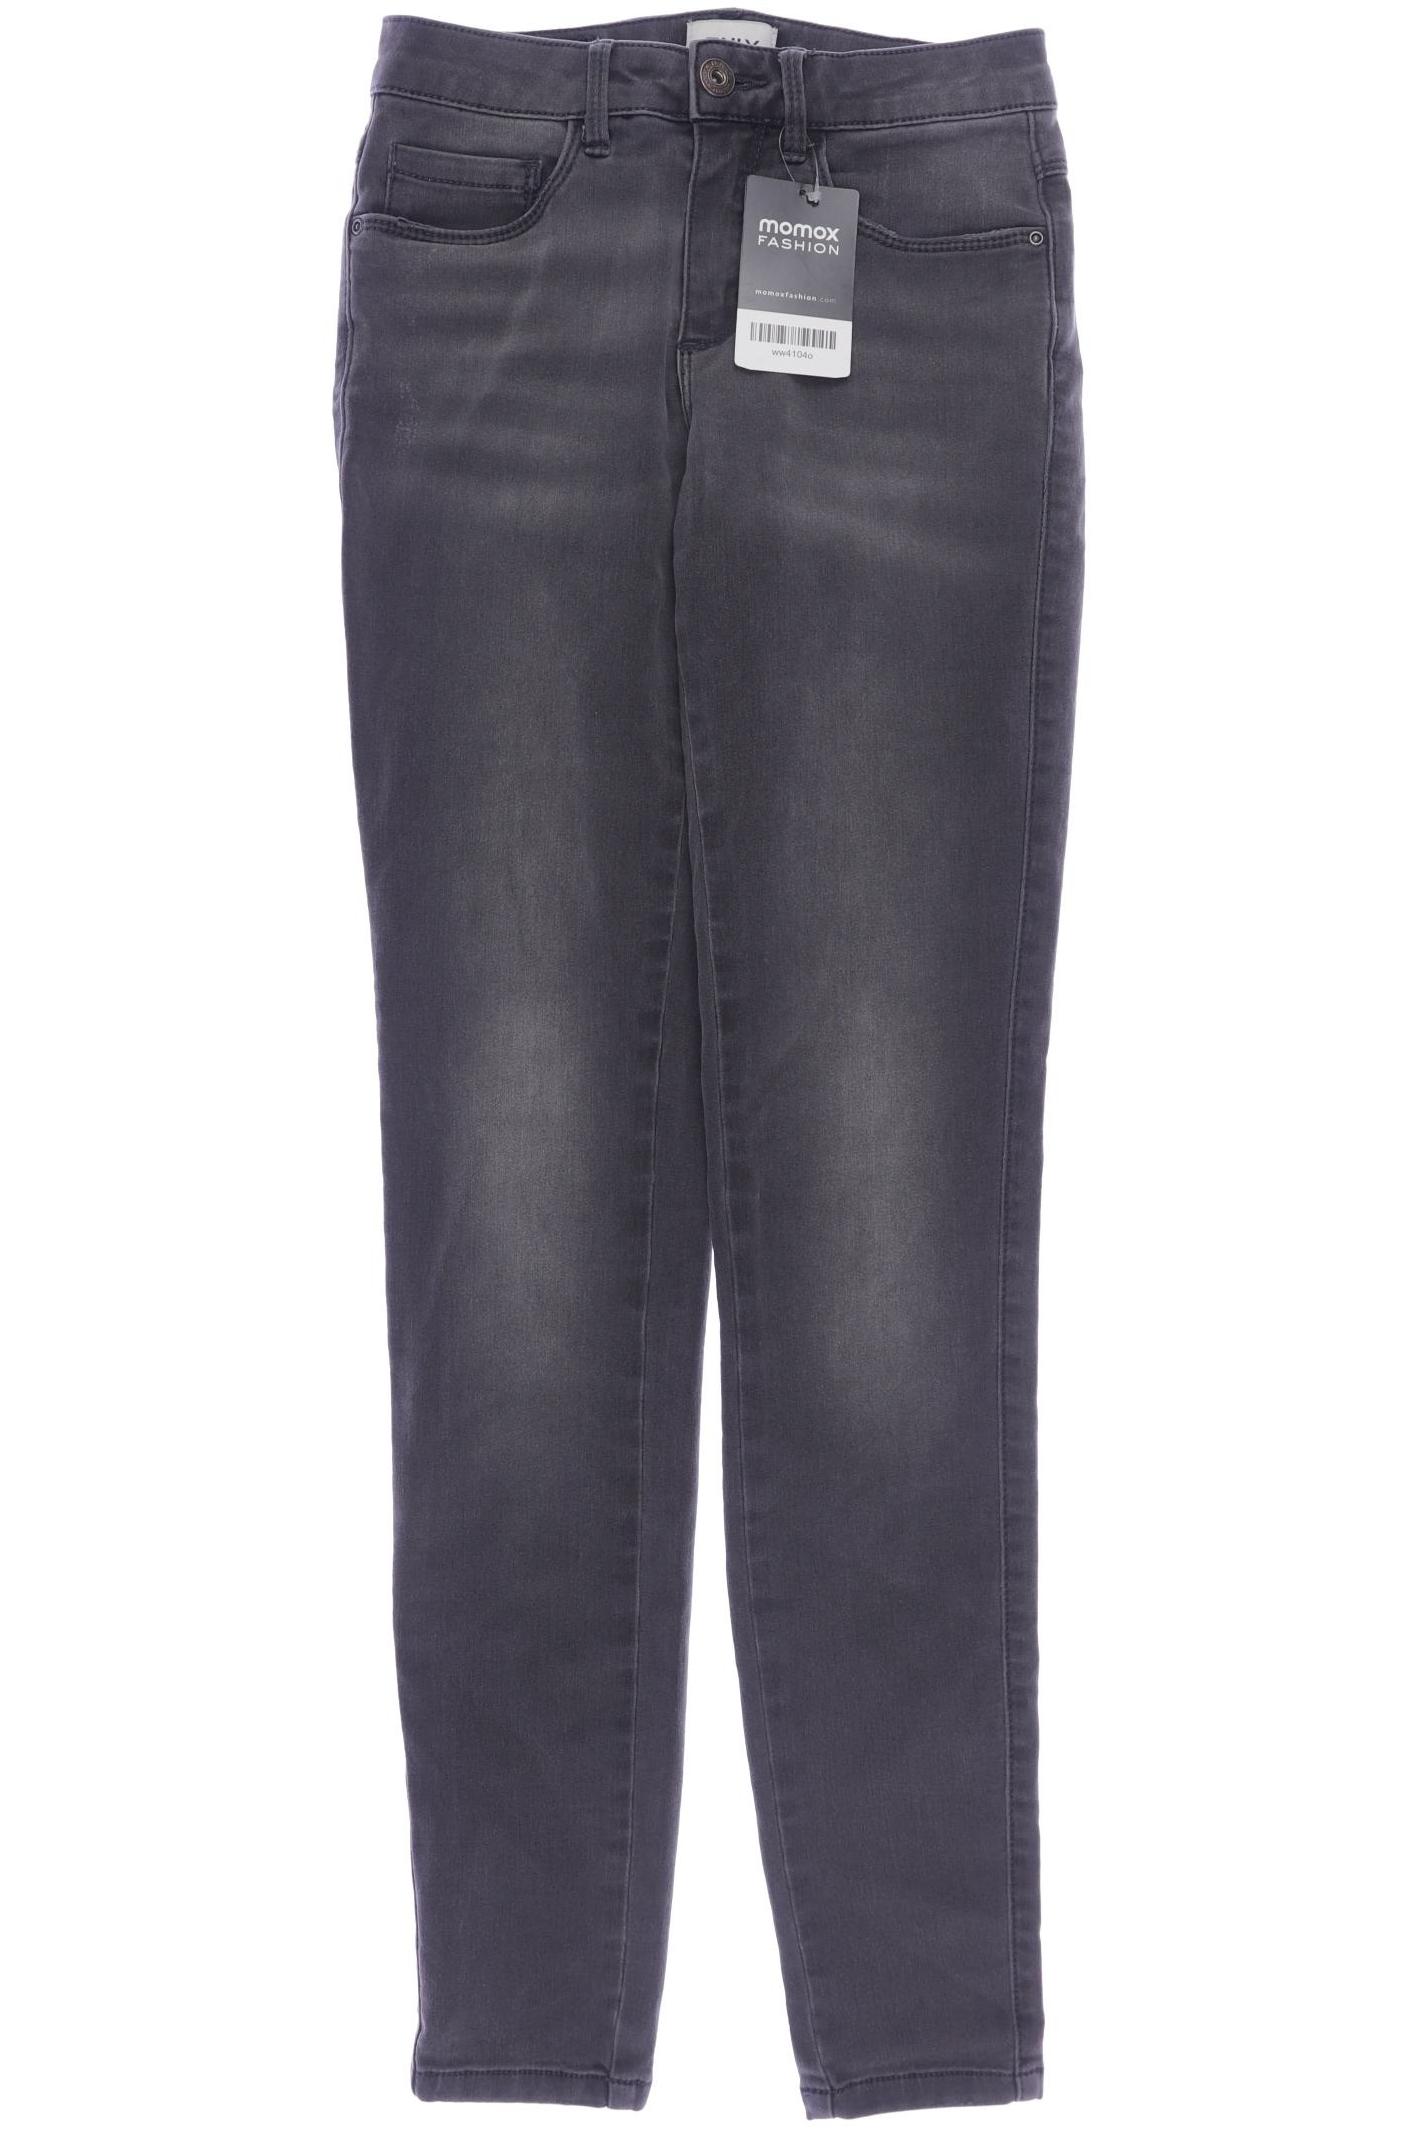 Only Damen Jeans, grau, Gr. 122 von Only